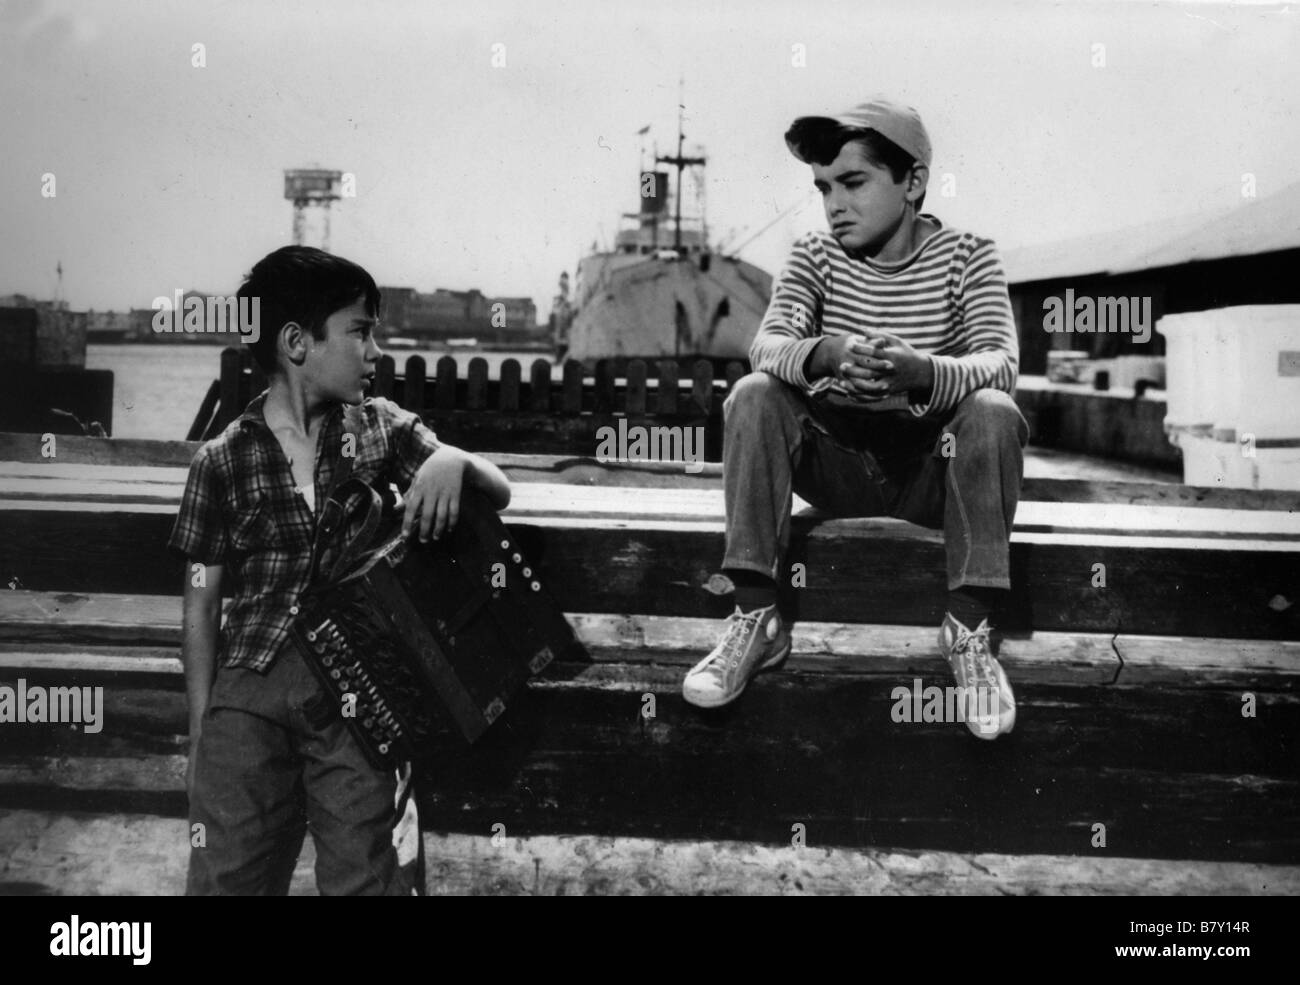 Les Deux gamins Dos golfillos, Los Jahr: 1961 - Spanien Joselito Regisseur:  Antonio del Amo Stockfotografie - Alamy